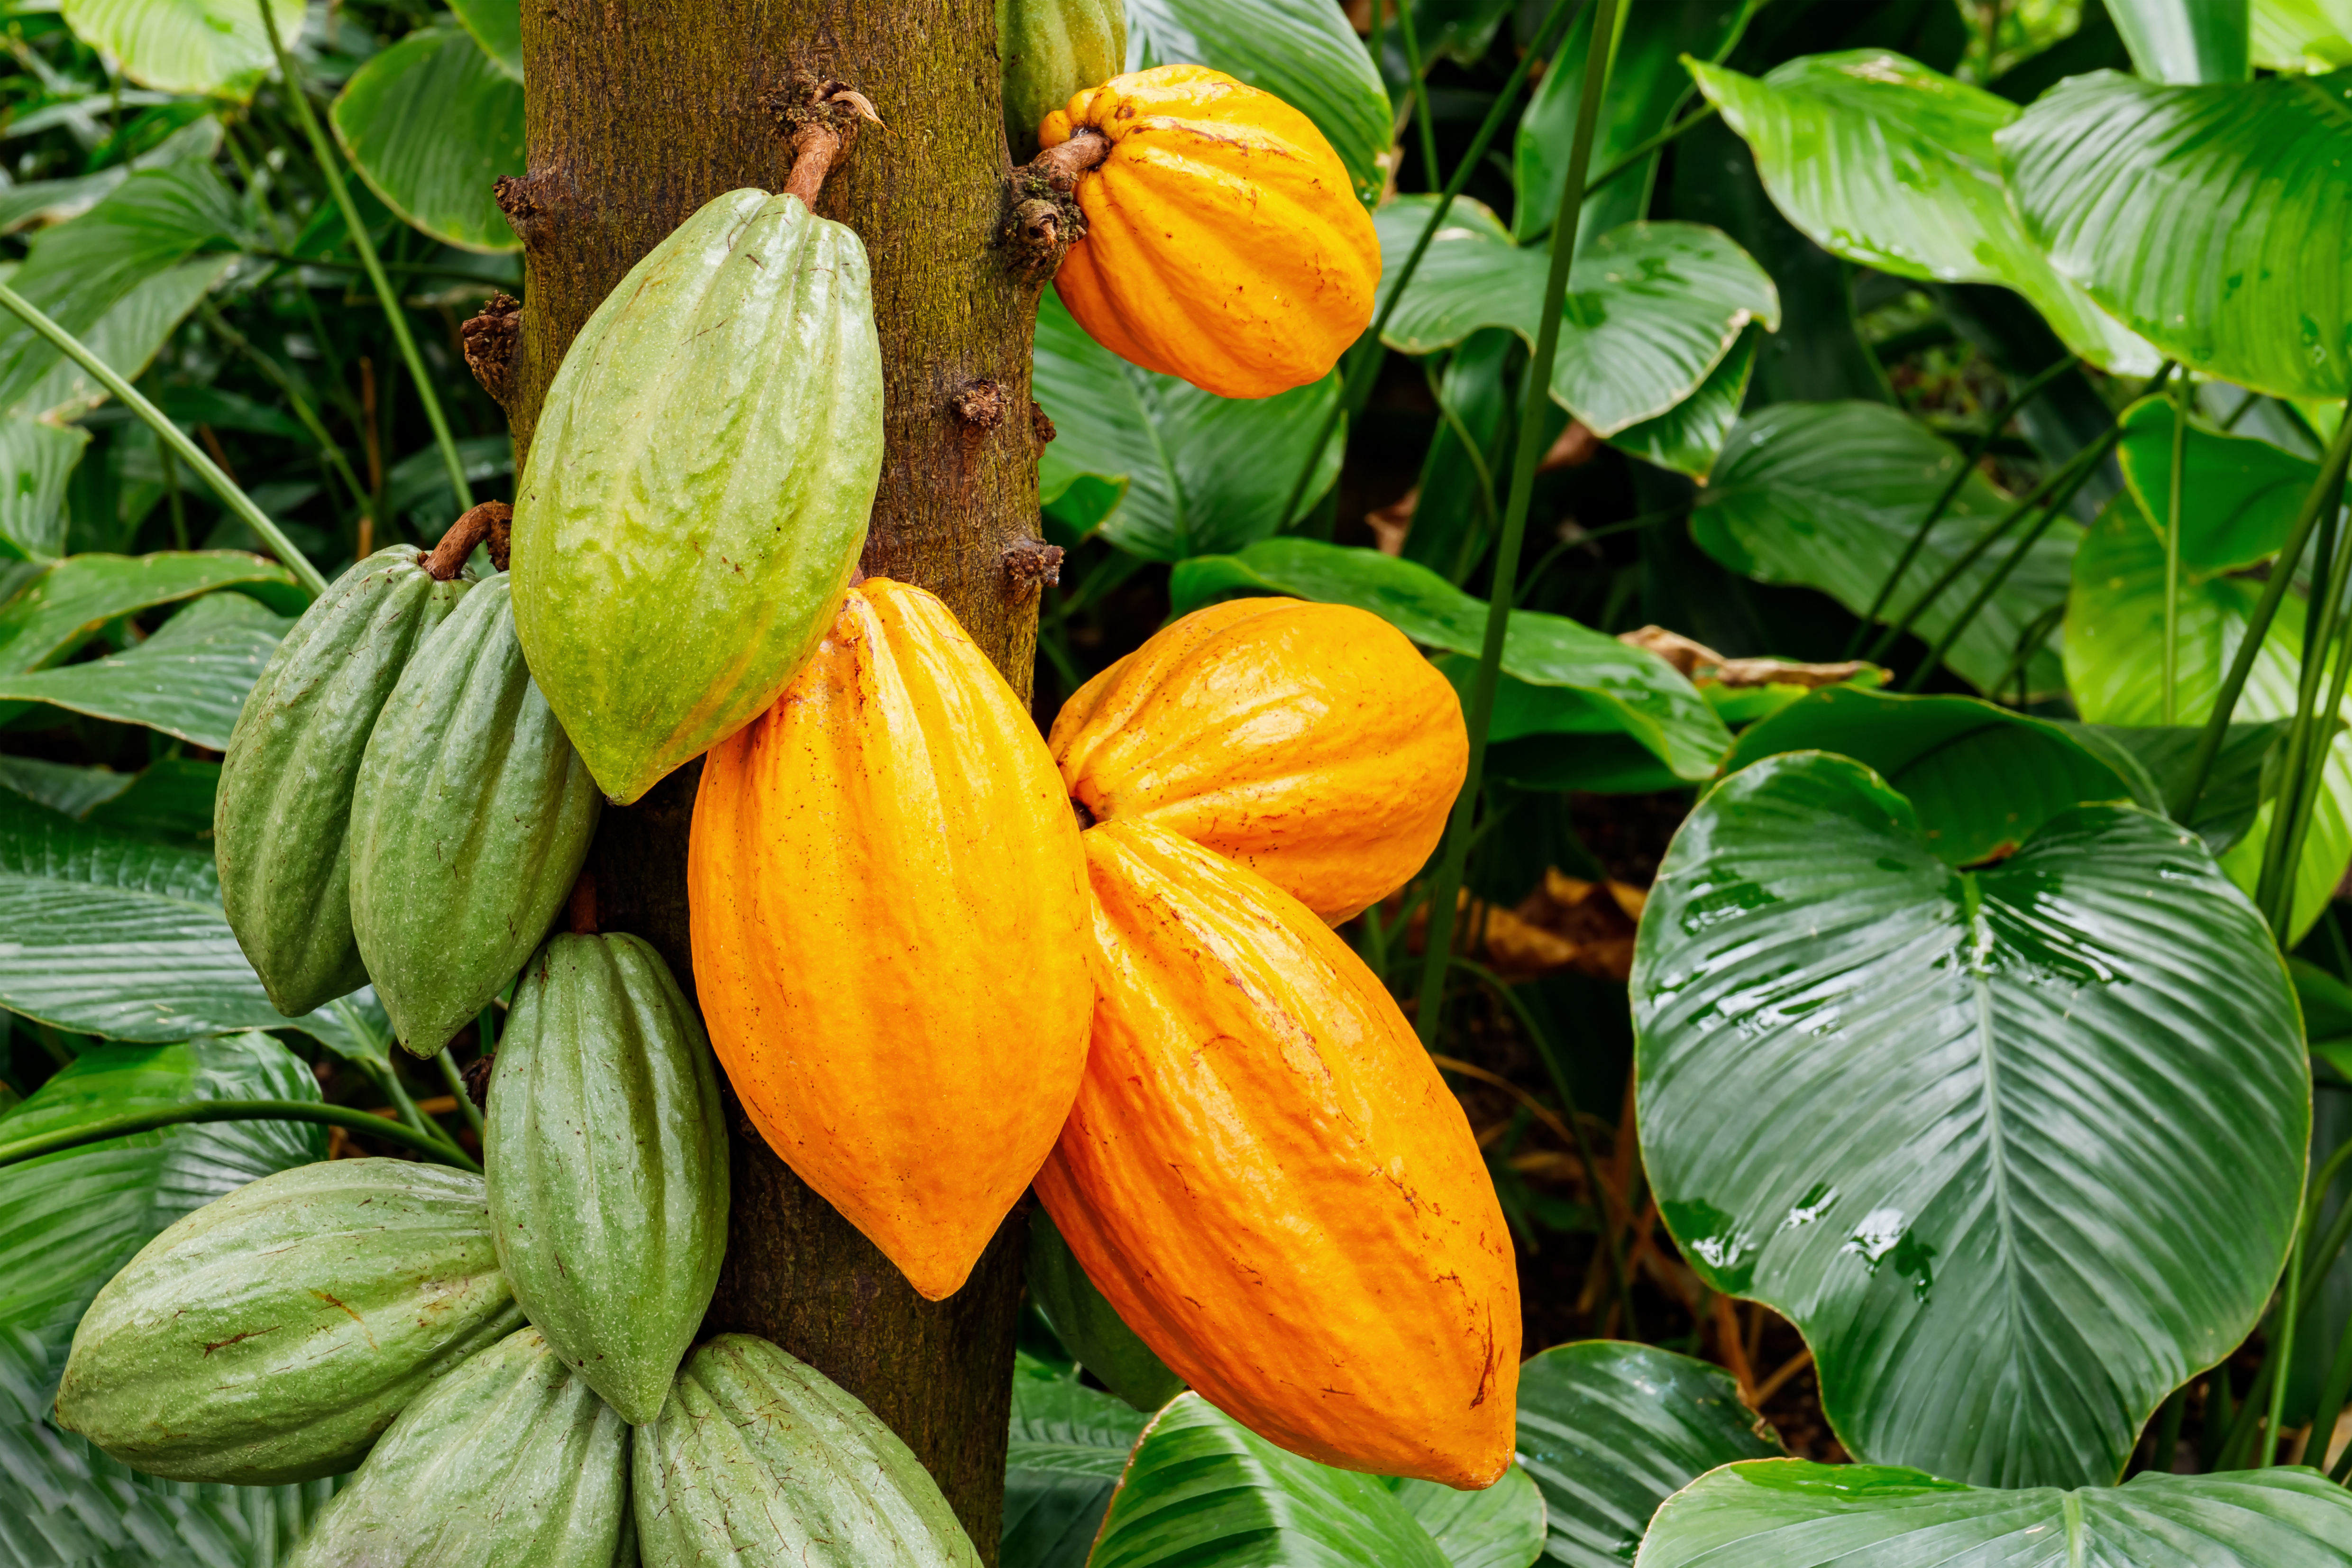     La filière Valcaco primée lors d’un concours international de cacao

